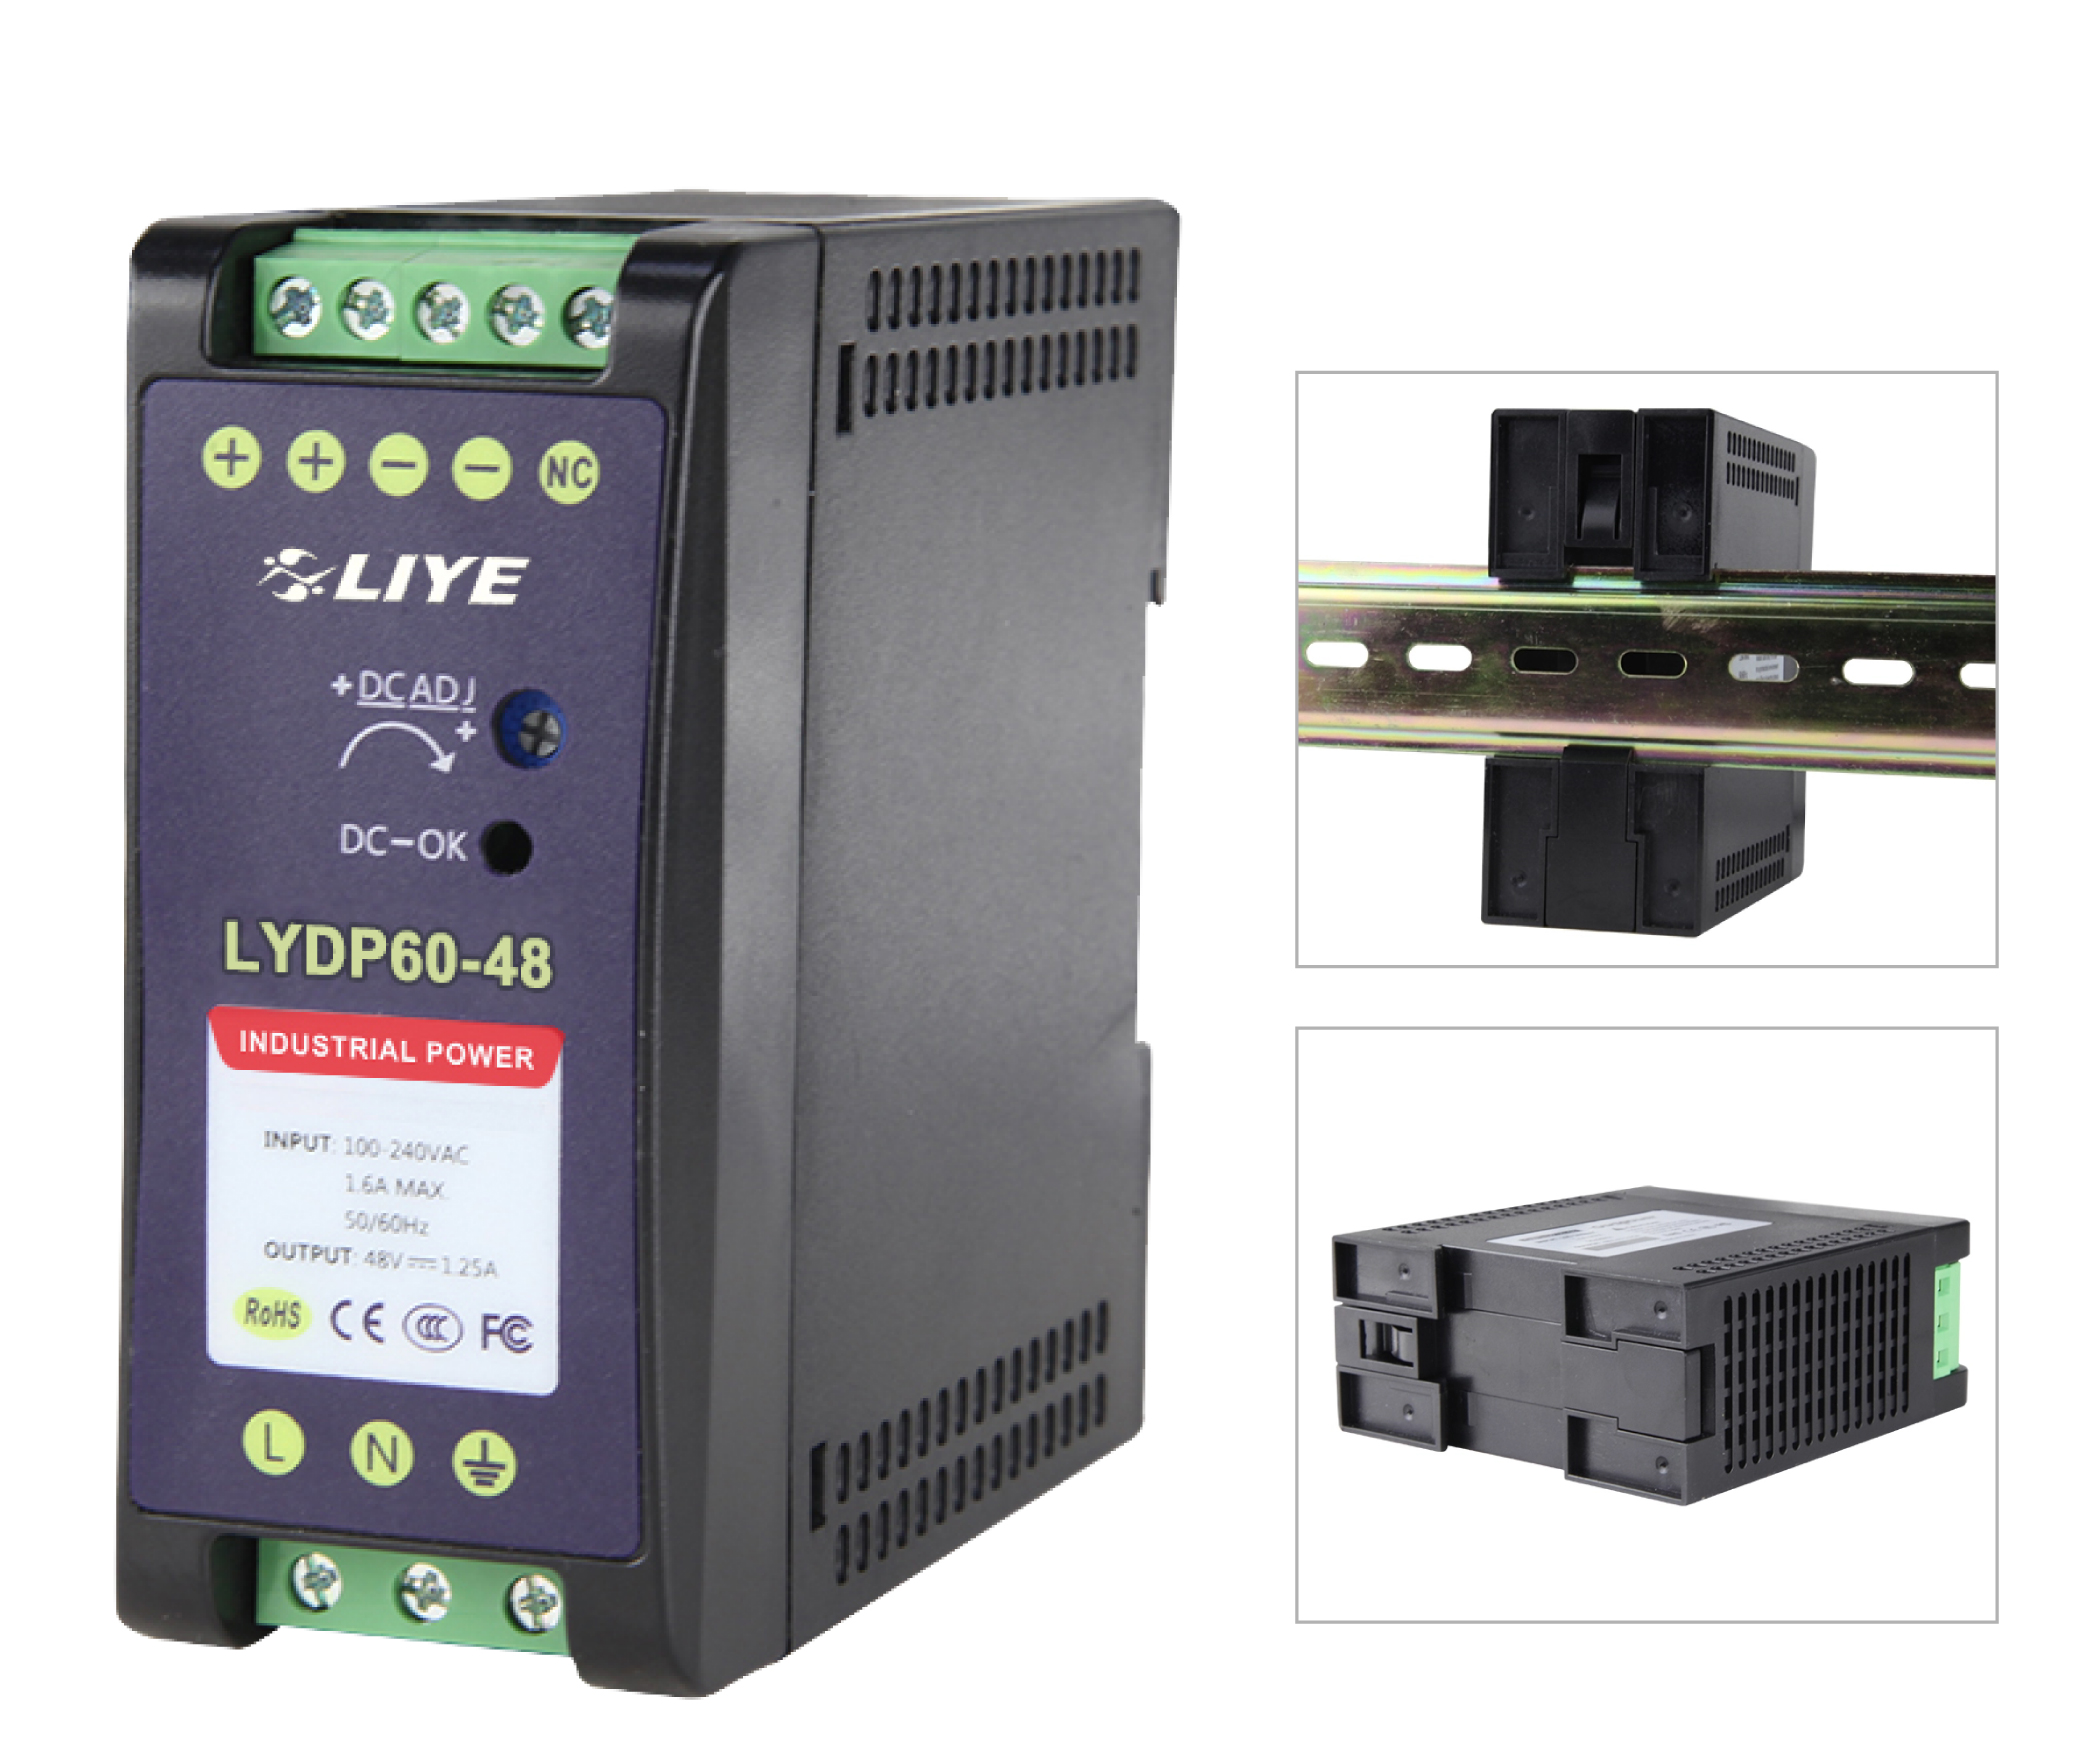 秝業 LYDP60-48 60W軌道式(DIN Rail)電源供應器